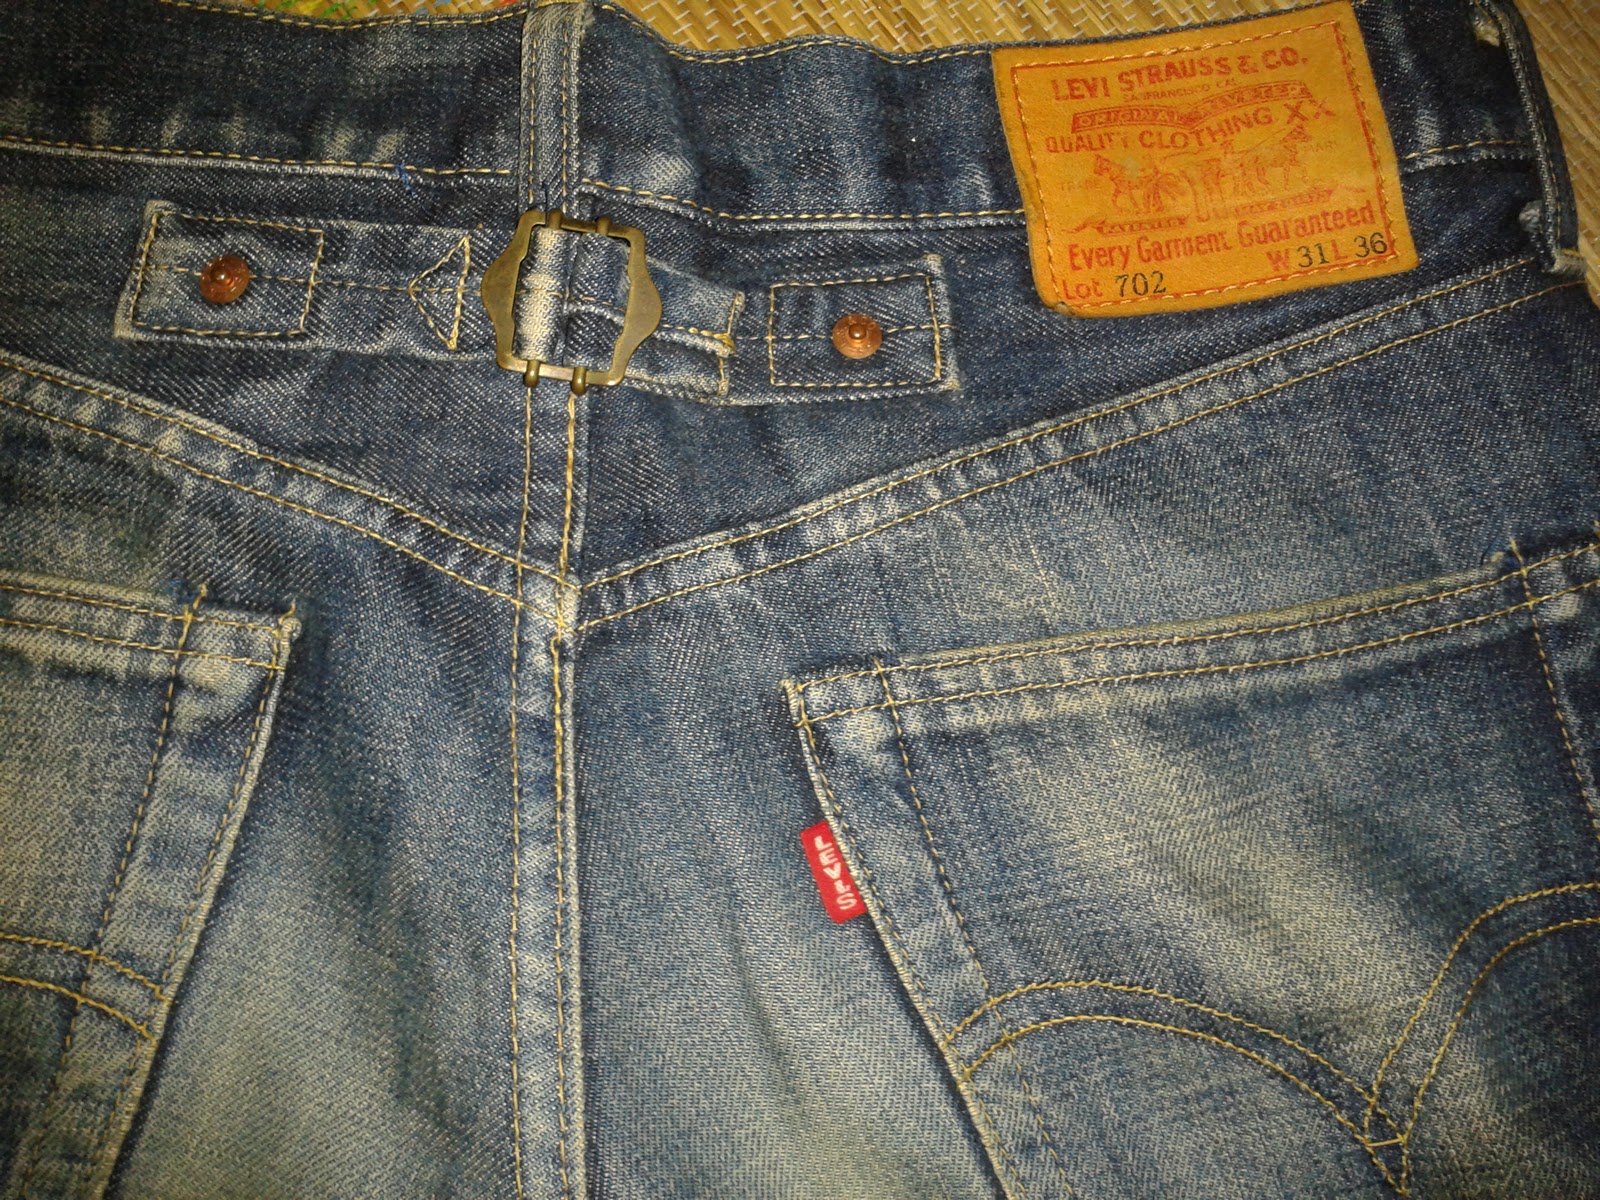 rosekbundle: Seluar Jeans 702 Levis button donat